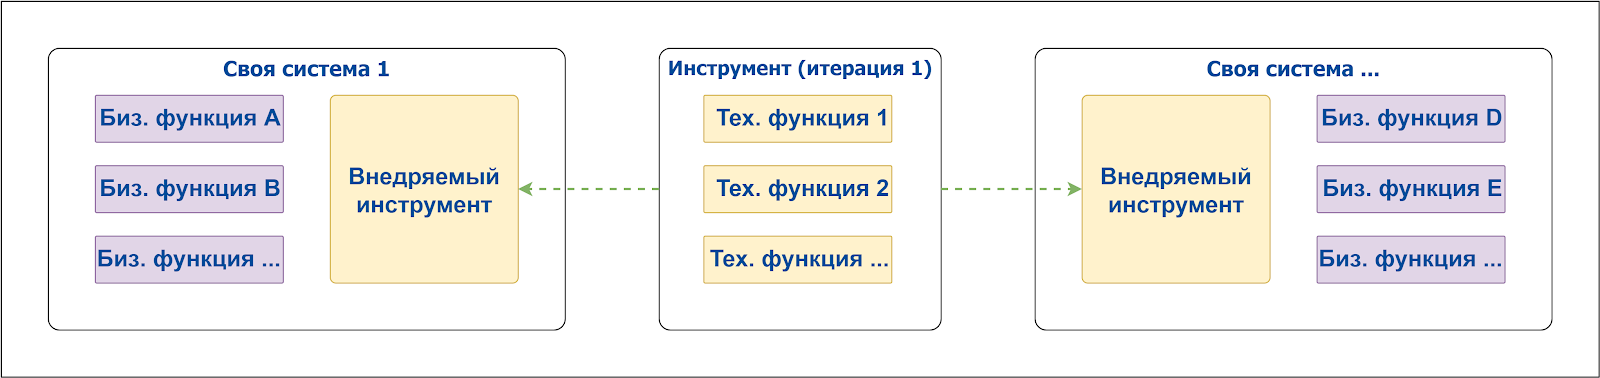 Схема 2. Группировка базовых функций в отдельный модуль.